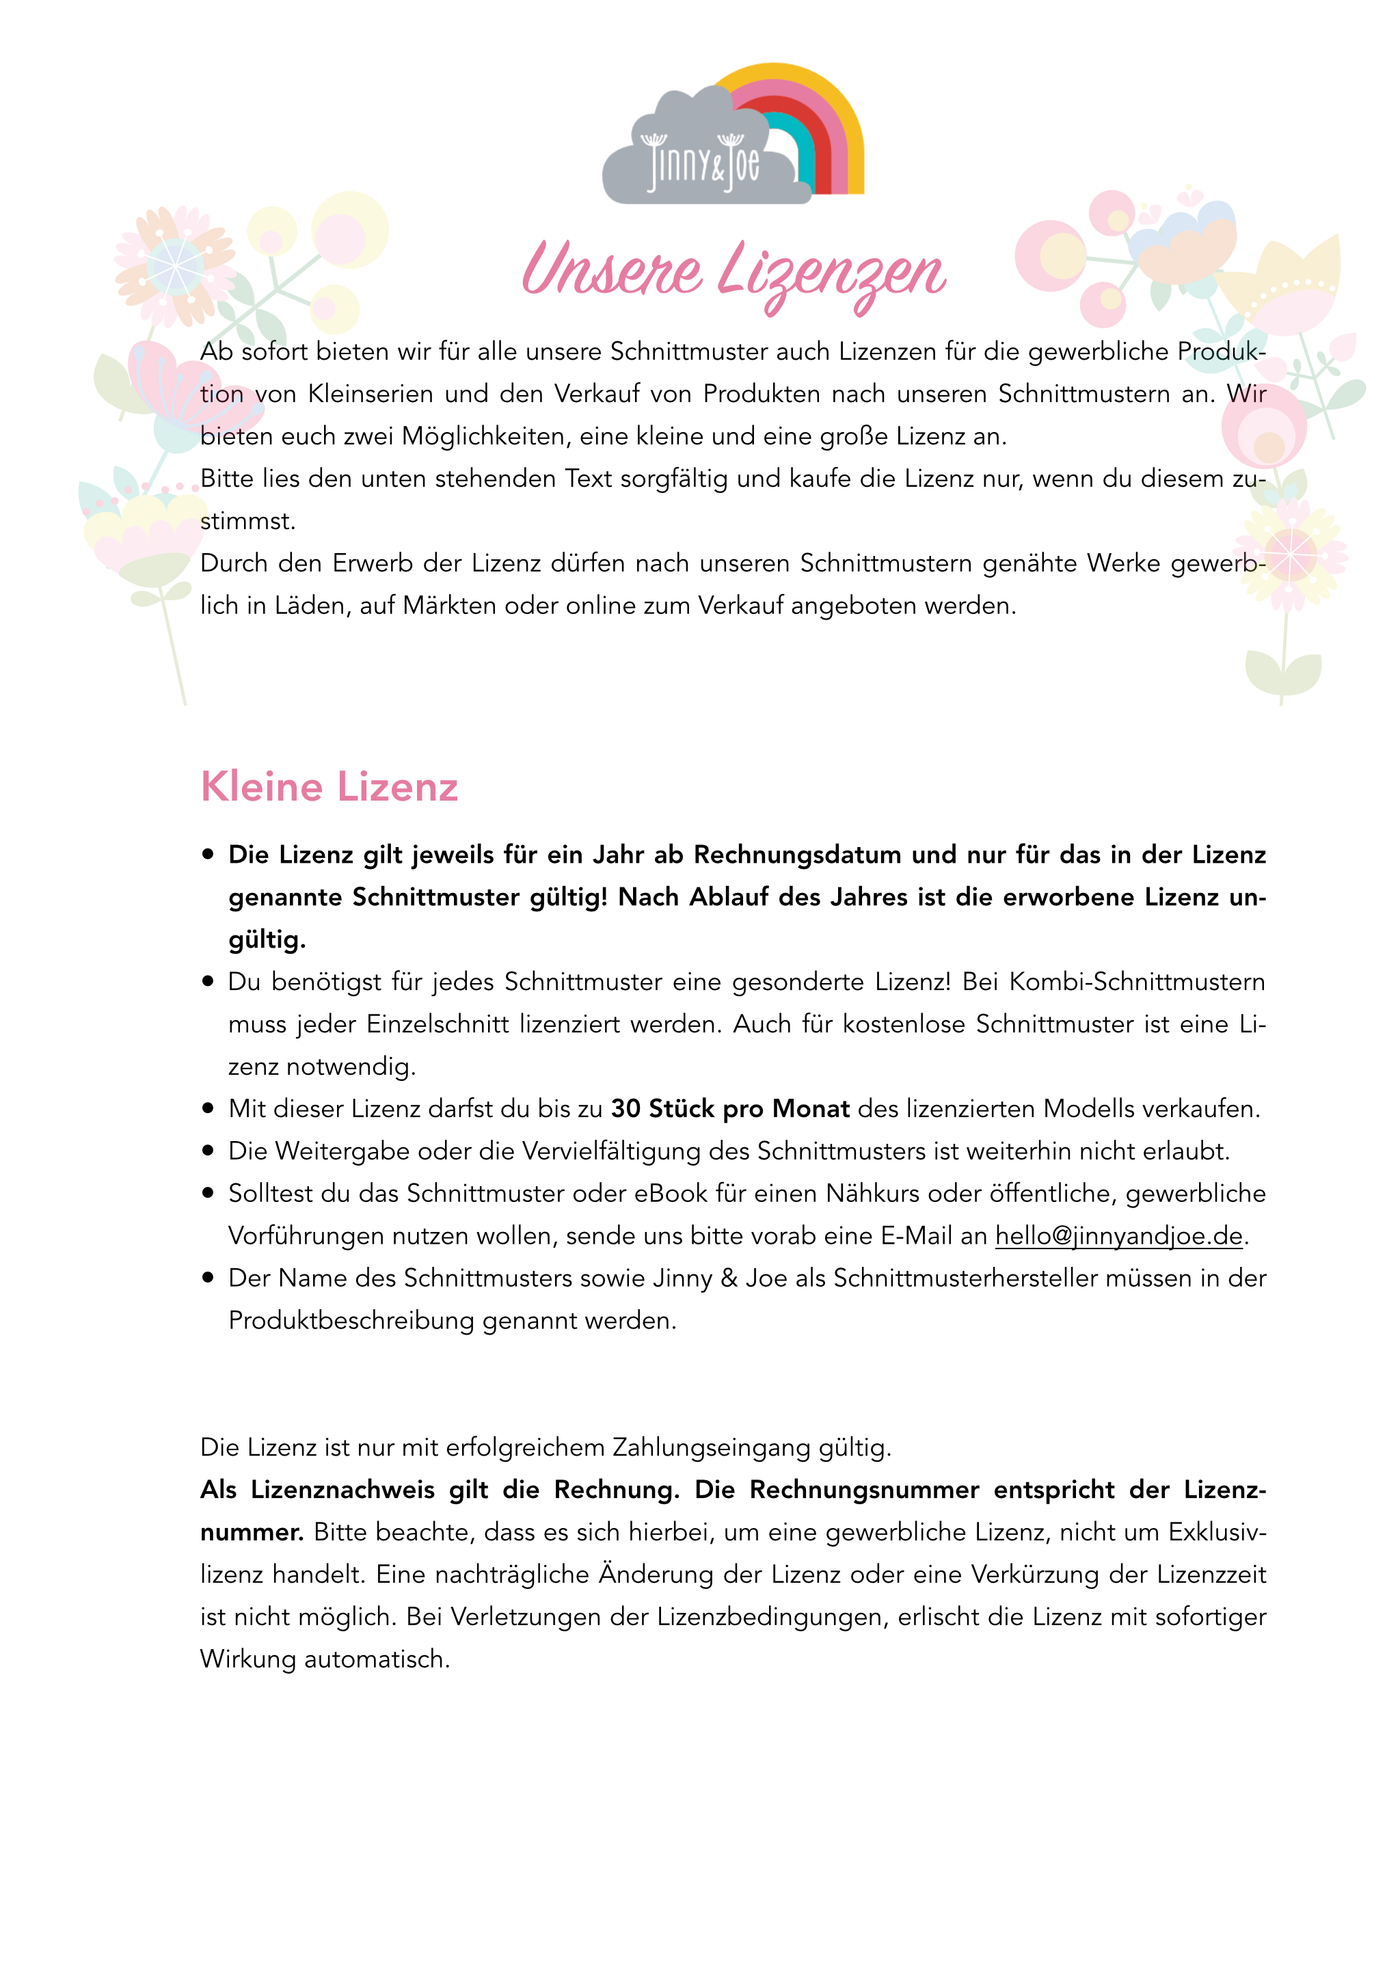 eBook: großes Regenbogenkissen-E-Book-Jinny & Joe